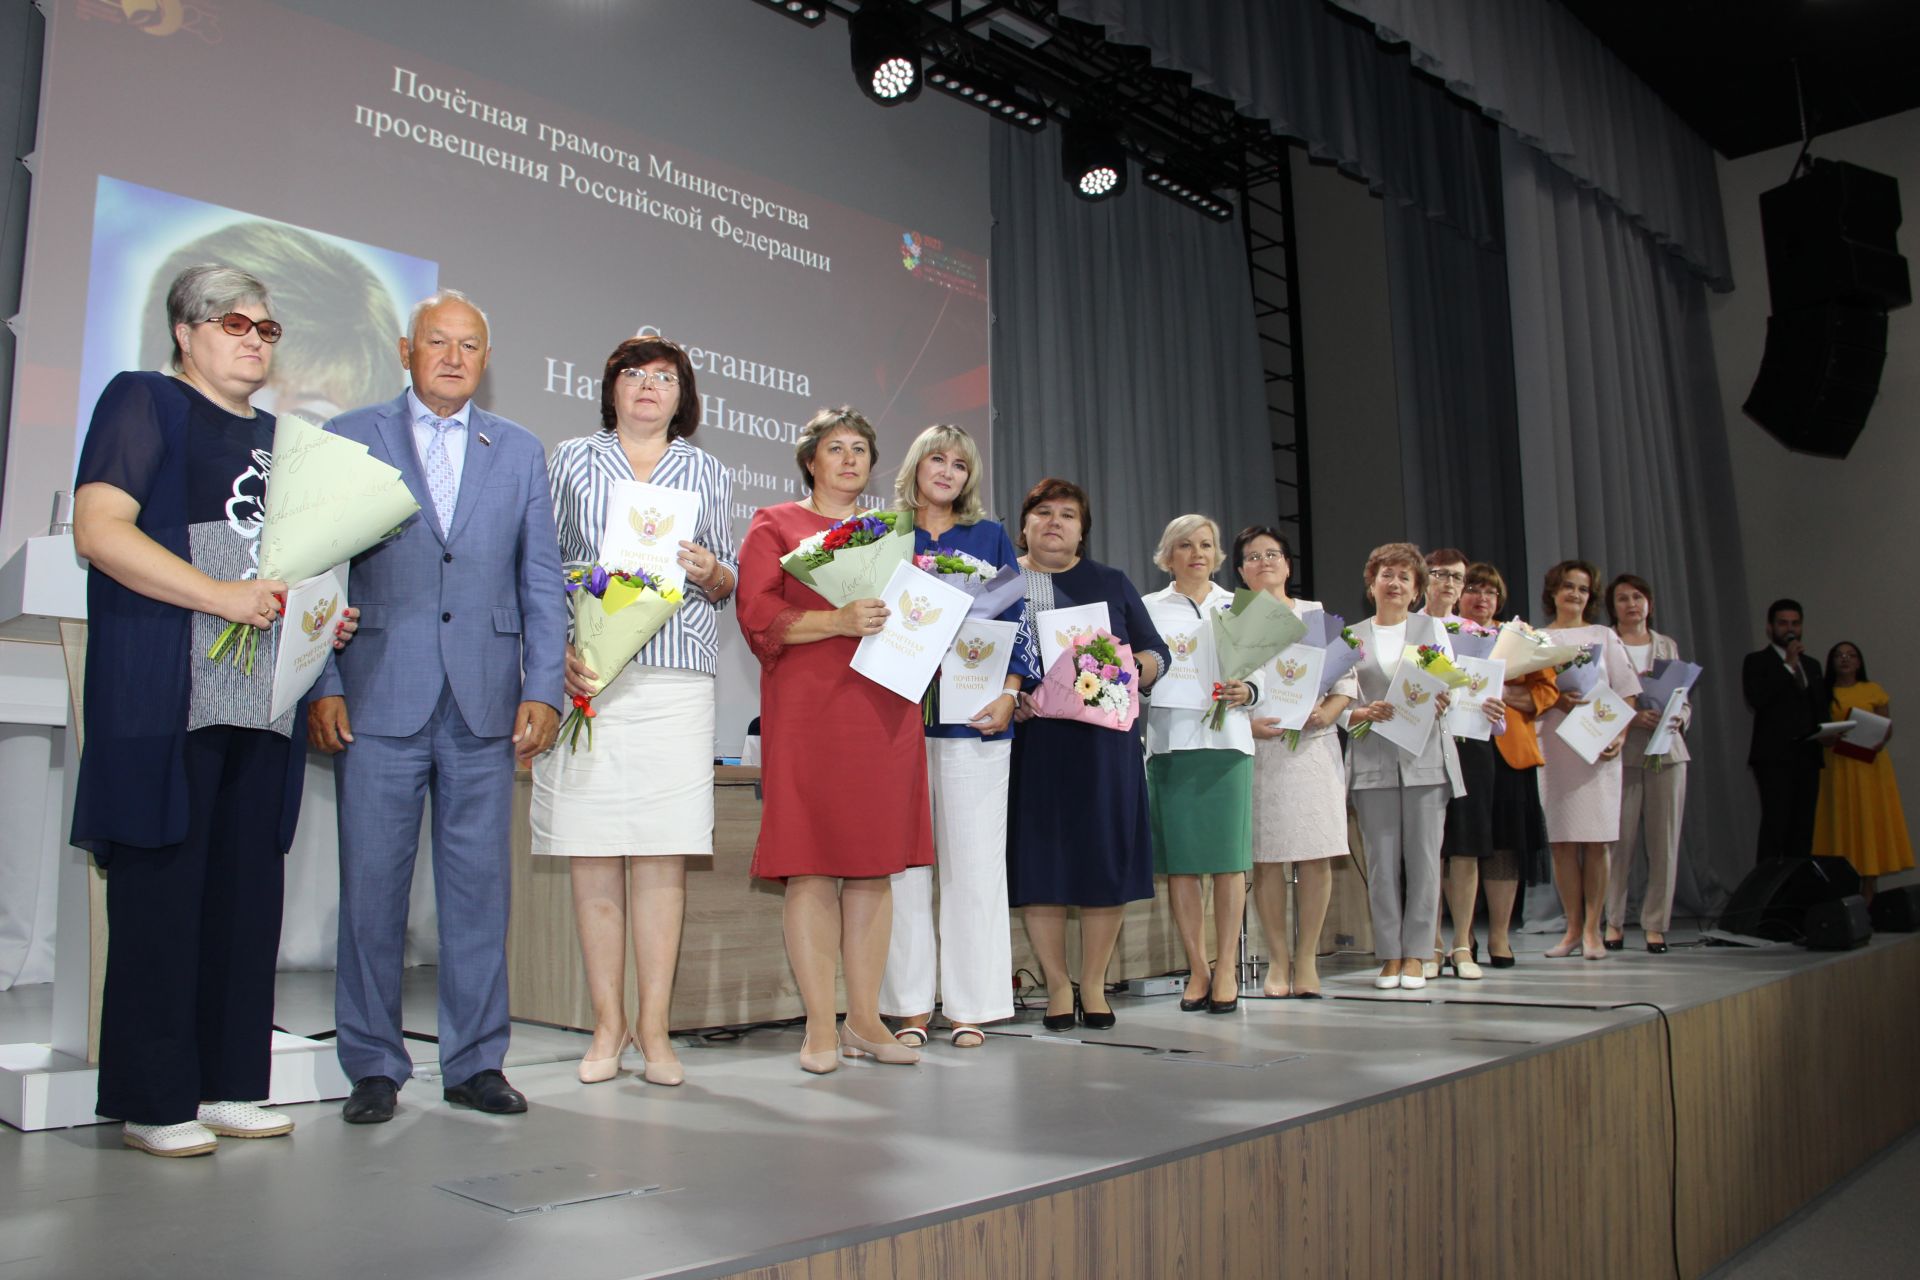 Мәдәни үсеш үзәгендә шәһәр һәм район педагогларының традицион август конференциясе